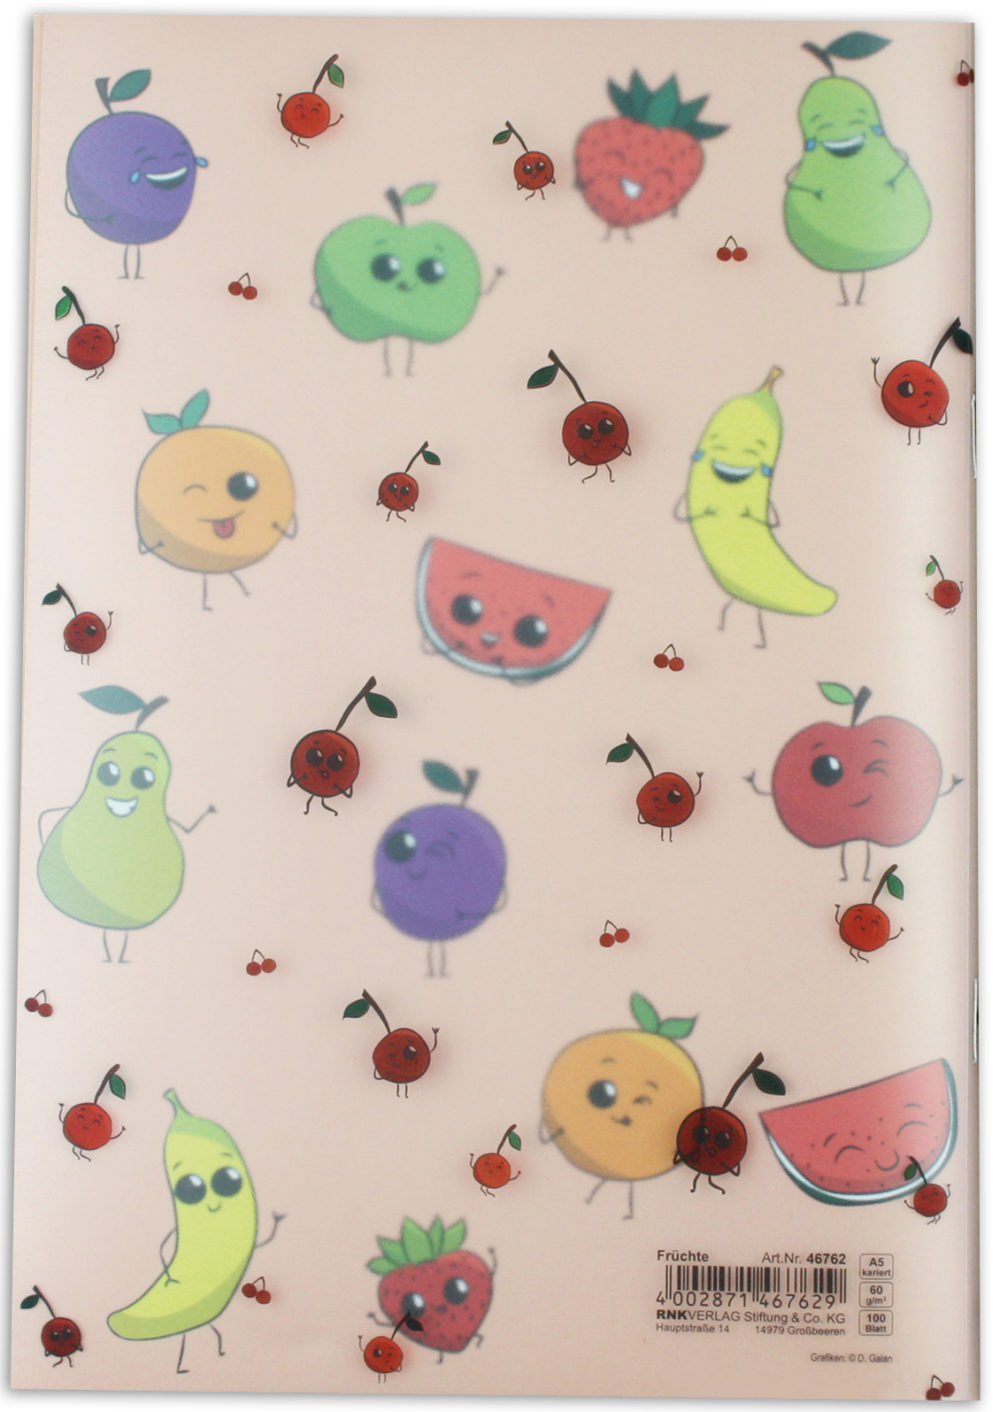 Heft "Früchte" im PP Umschlag Rückseite mit verschiedenen Früchten